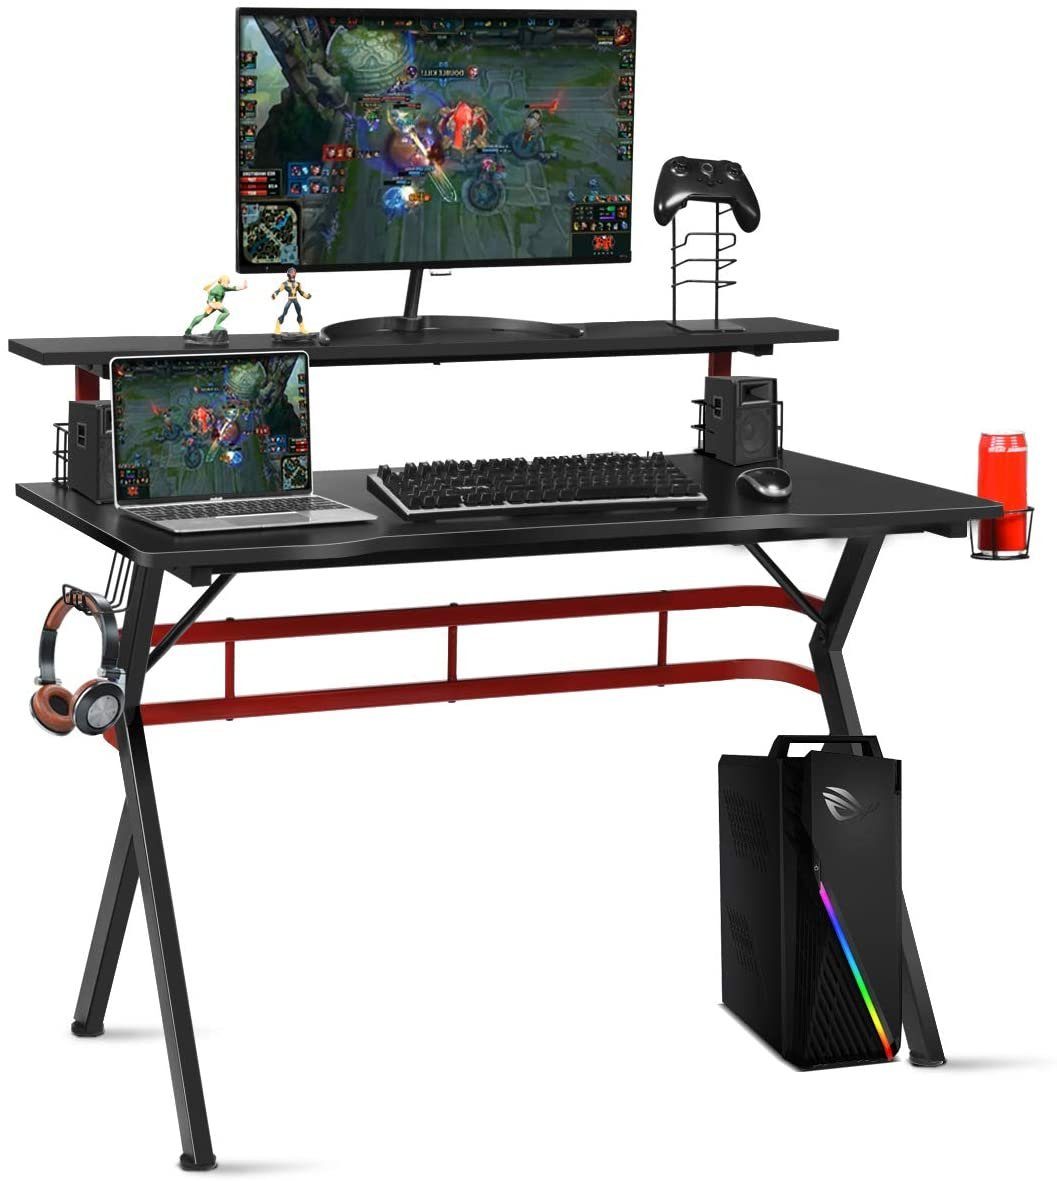 COSTWAY Gamingtisch, mit 2 Monitorständer, Haken 120cm schwarz+rot Boxen-Ständern